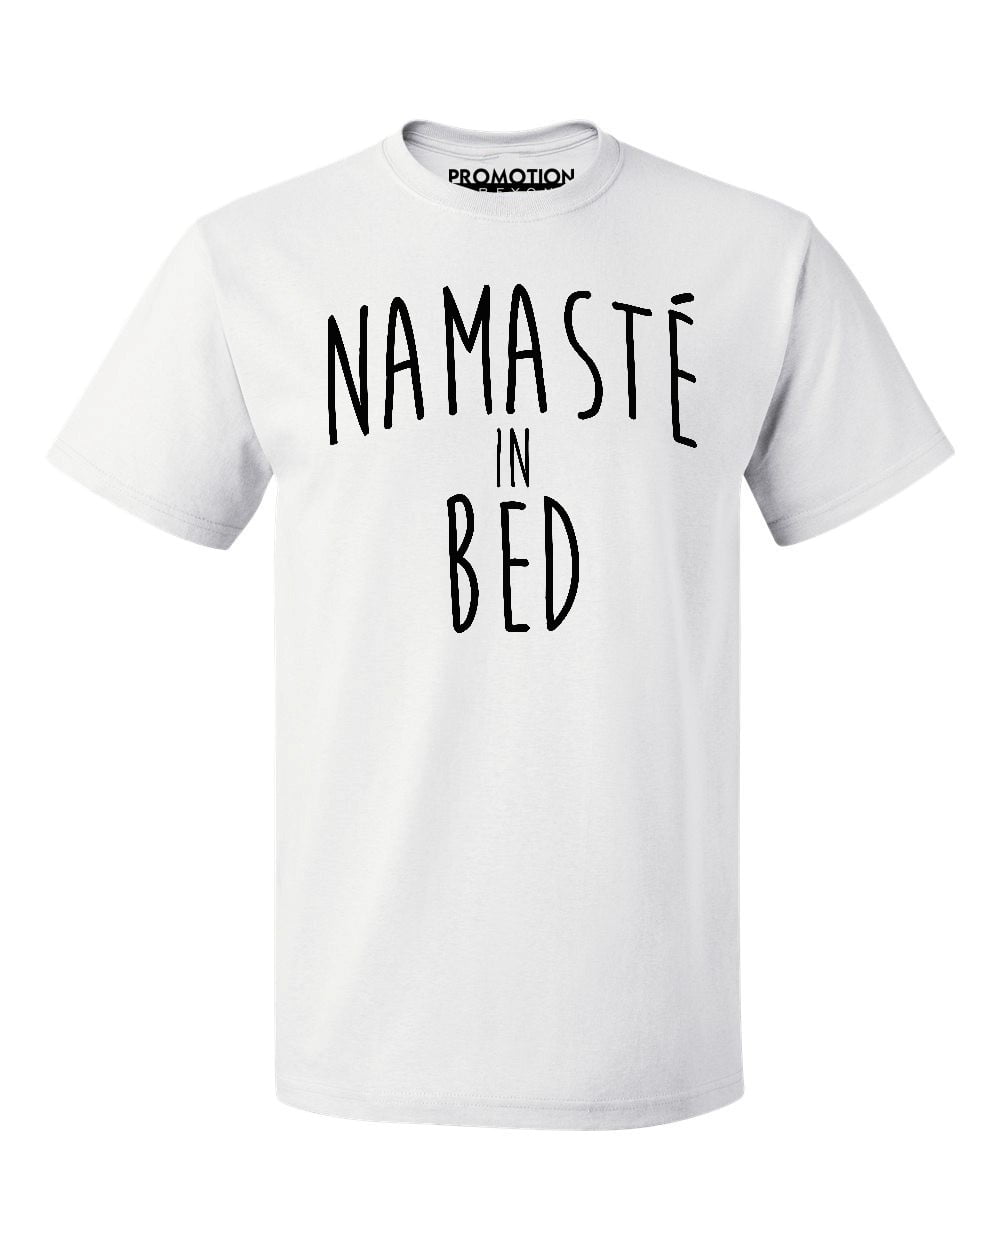 George Stevenson Mompelen kopiëren P&B Namaste In Bed Men's T-shirt, M, White - Walmart.com